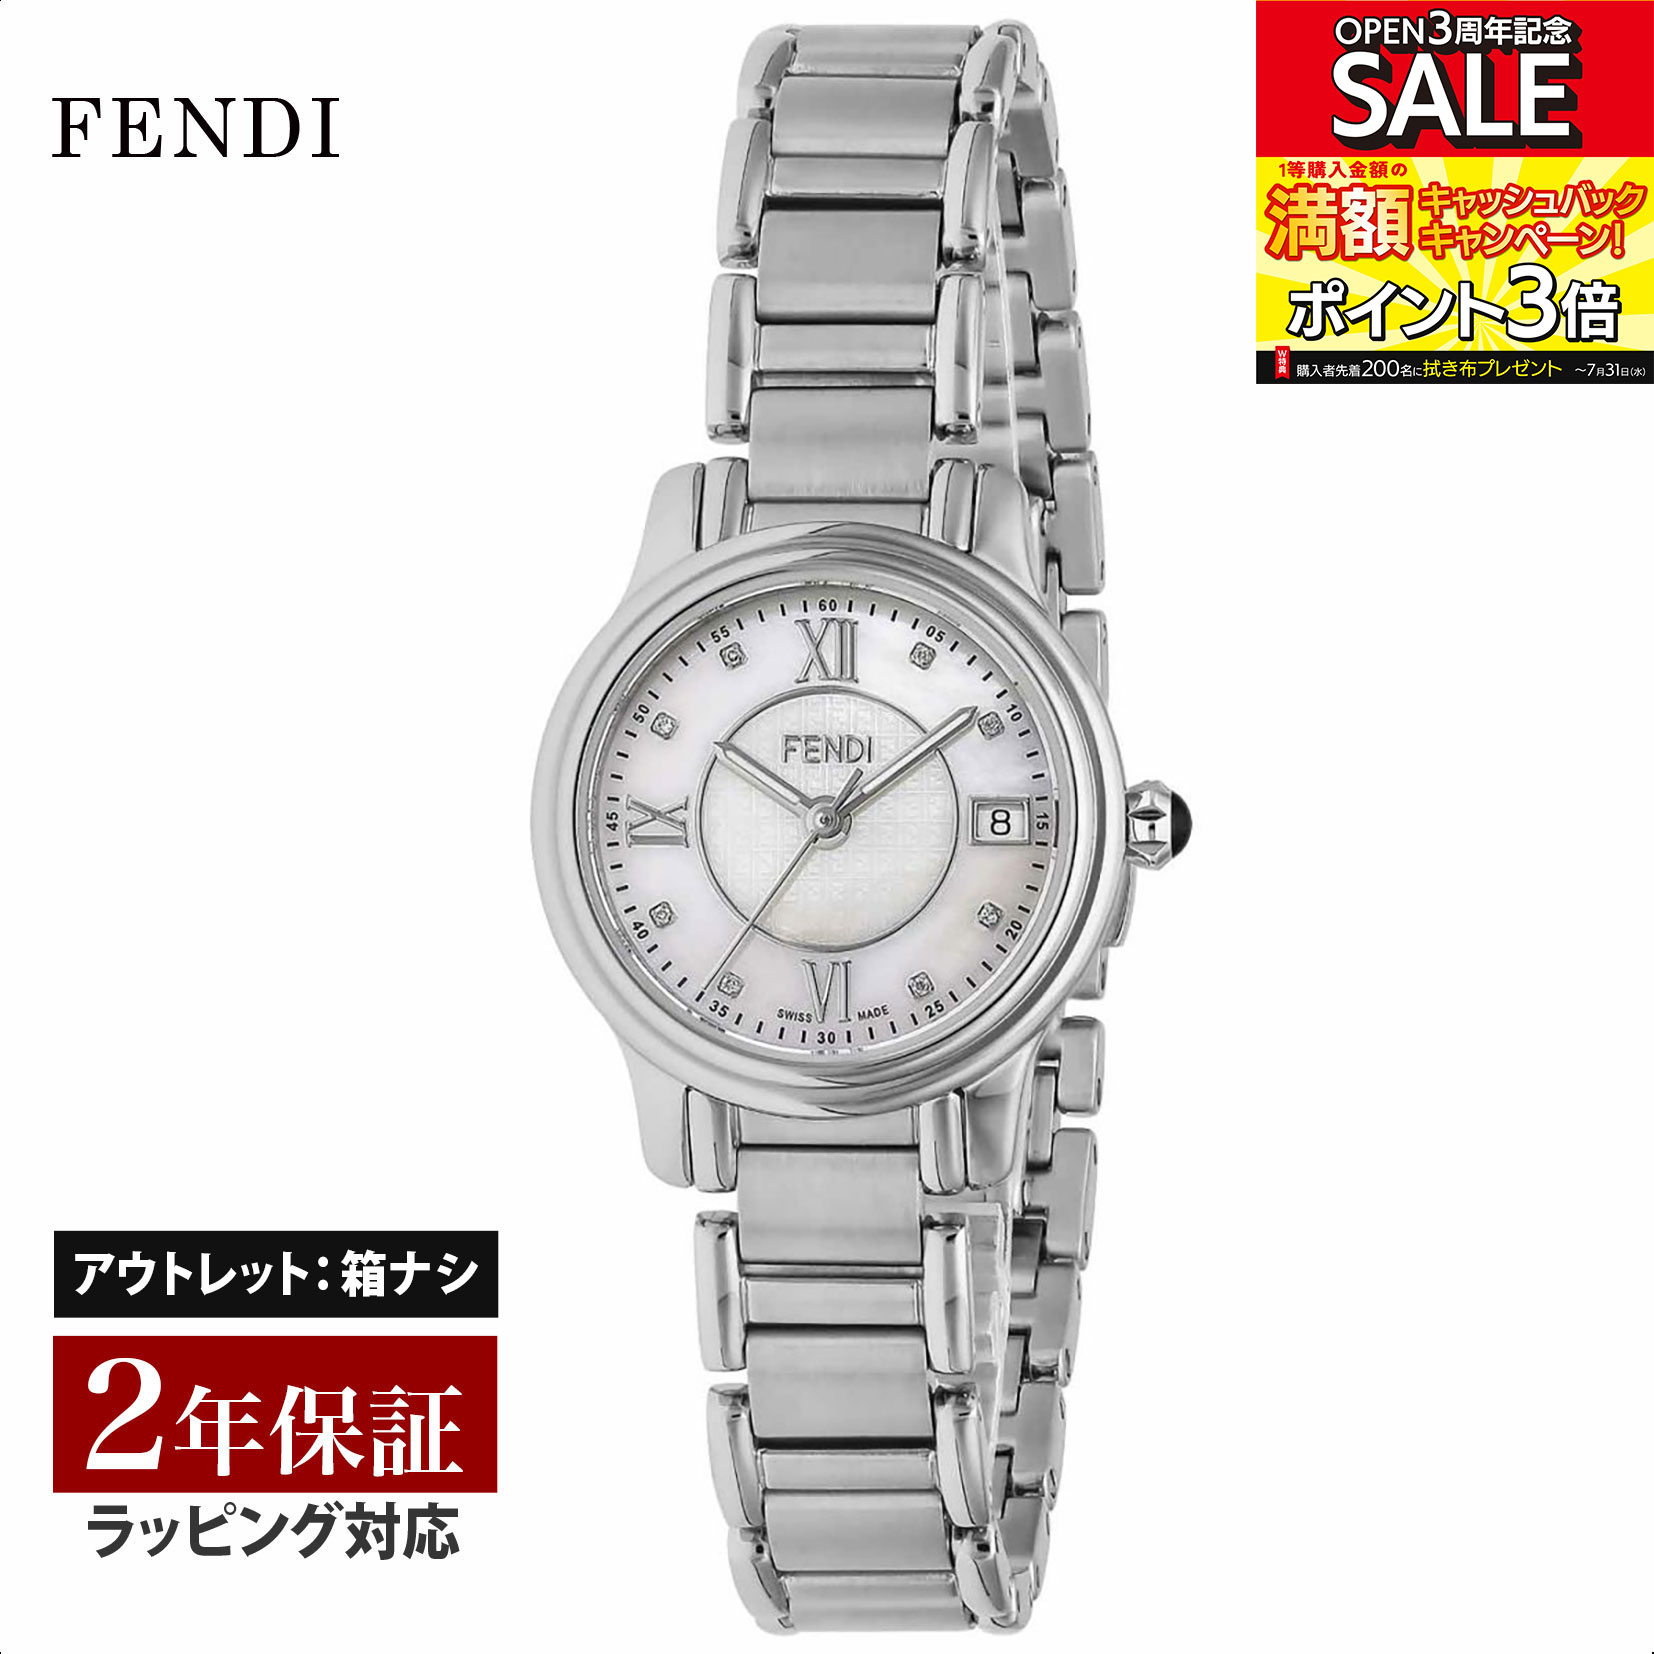 【クリアランスSALE】 FENDI フェンディ CLASSICO　ROUND クォーツ レディース ホワイト F255024500D1 腕時計 高級腕時計 ブランド 